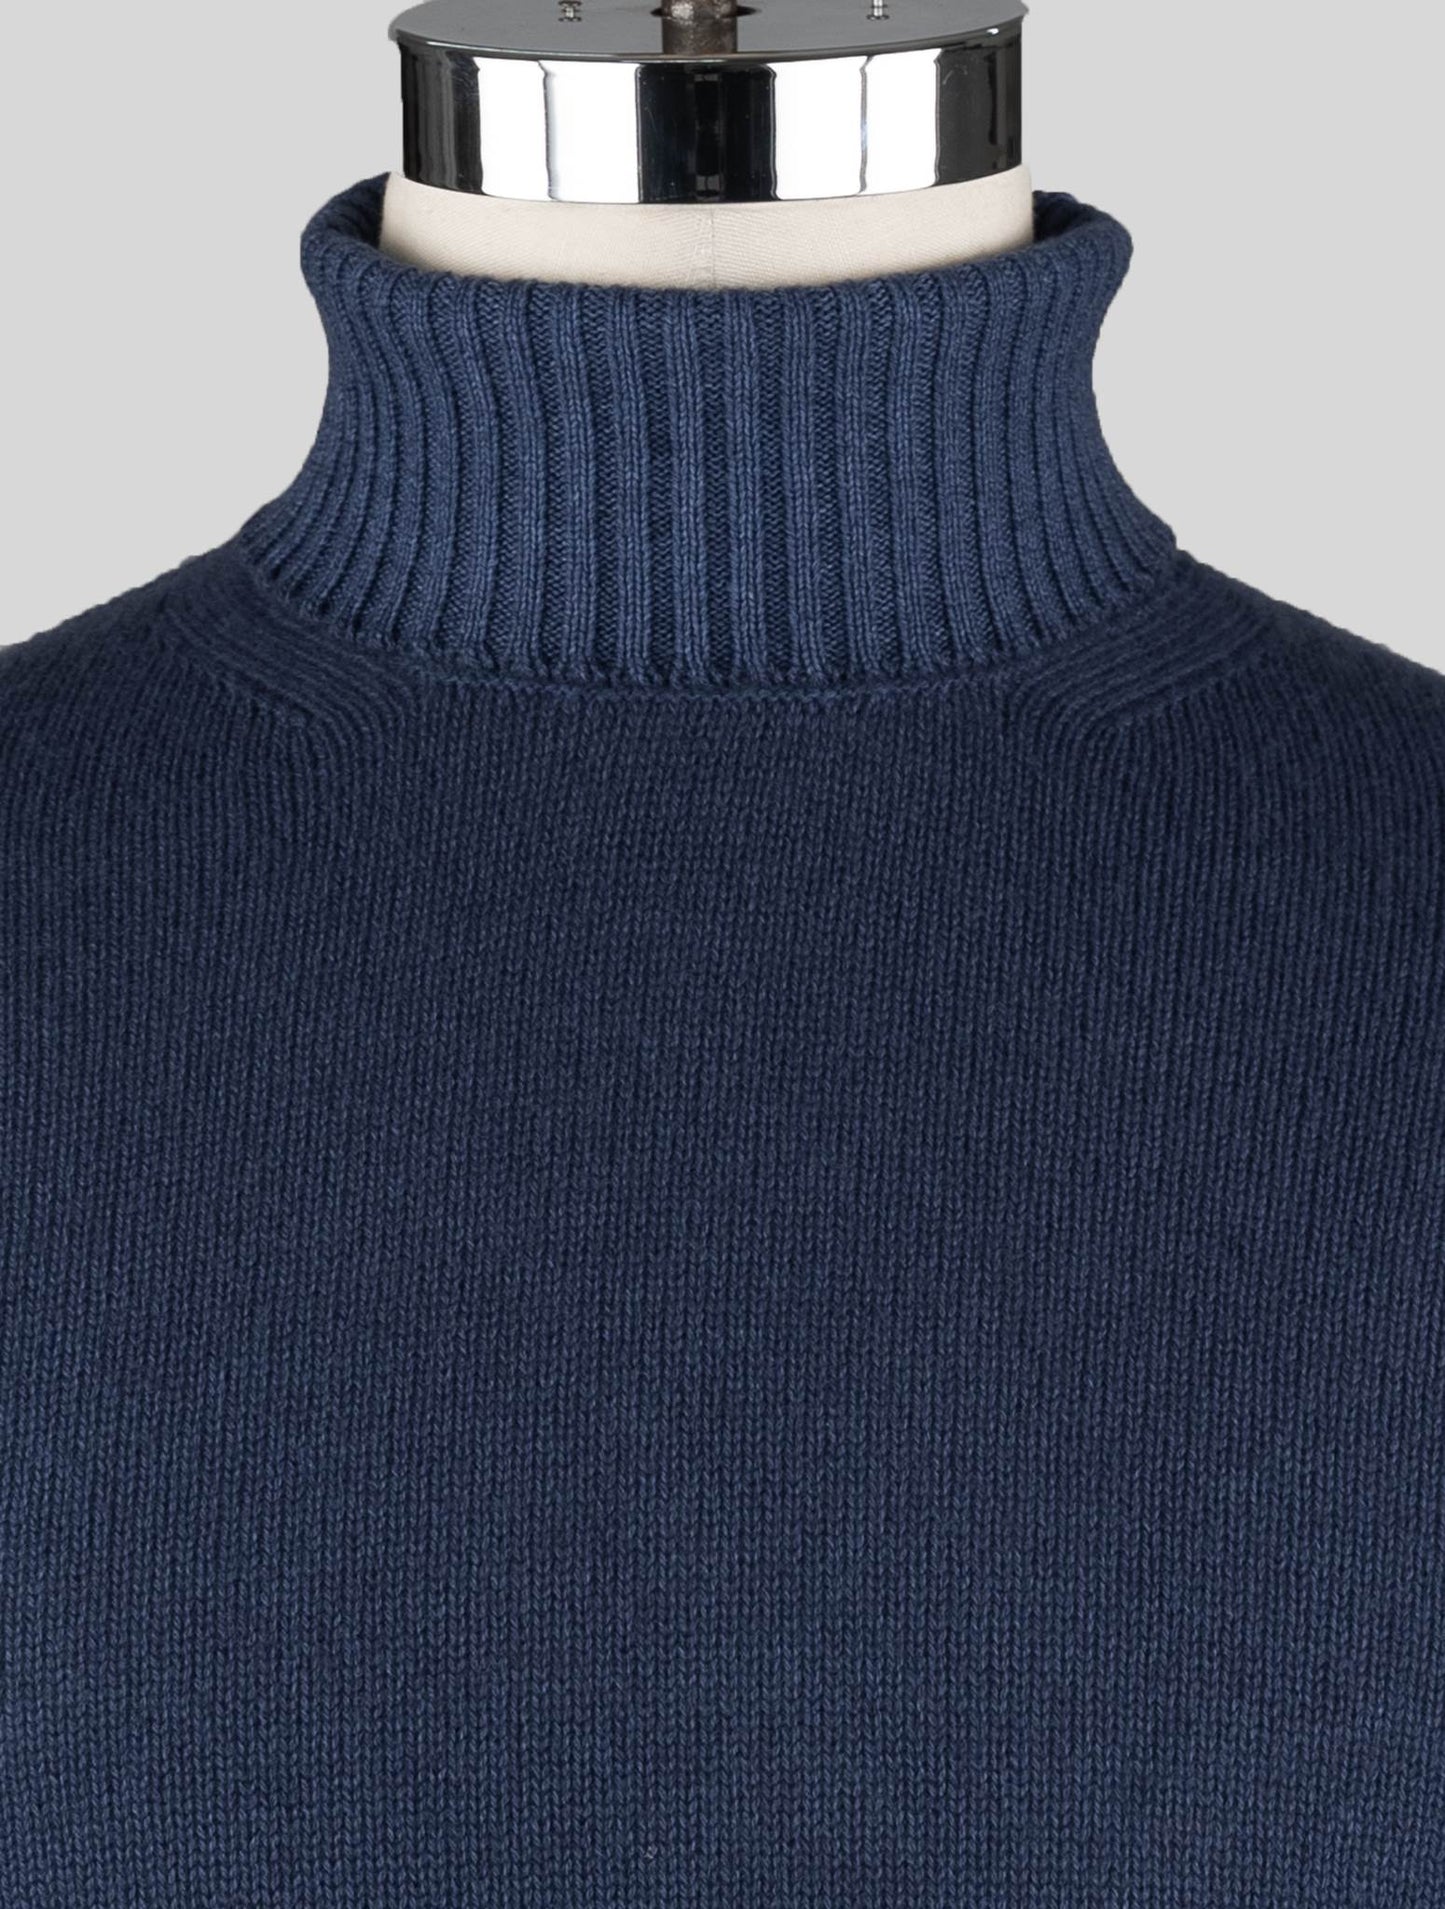 Malo plava djevičanska vunena džemper dolčevita